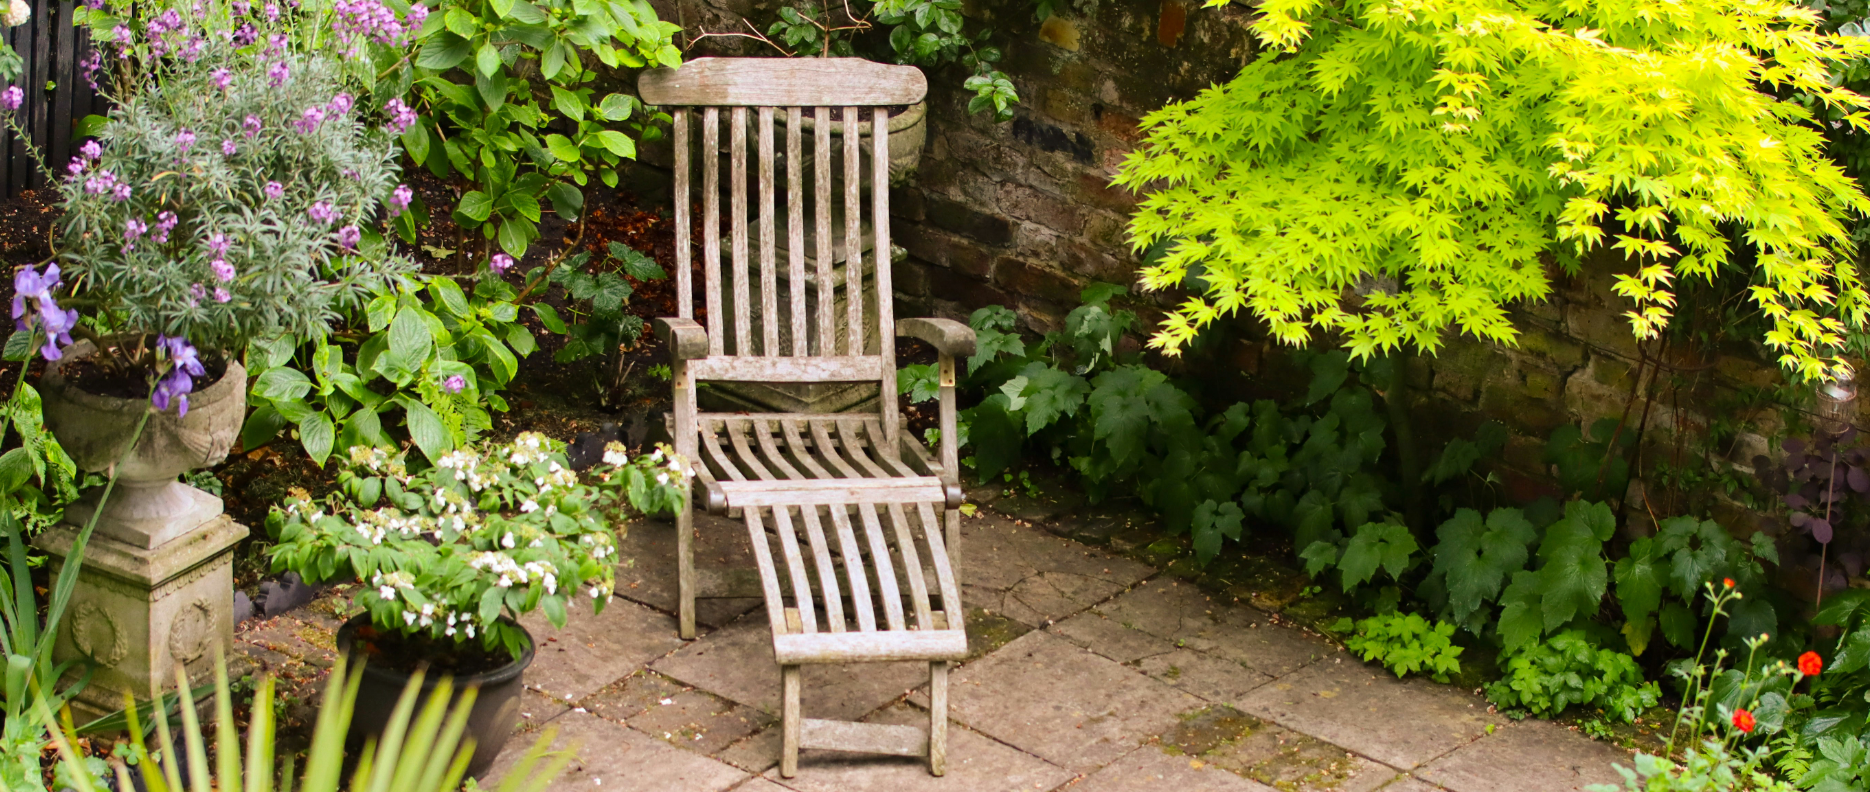 A wooden armchair beside plants in an east facing garden.